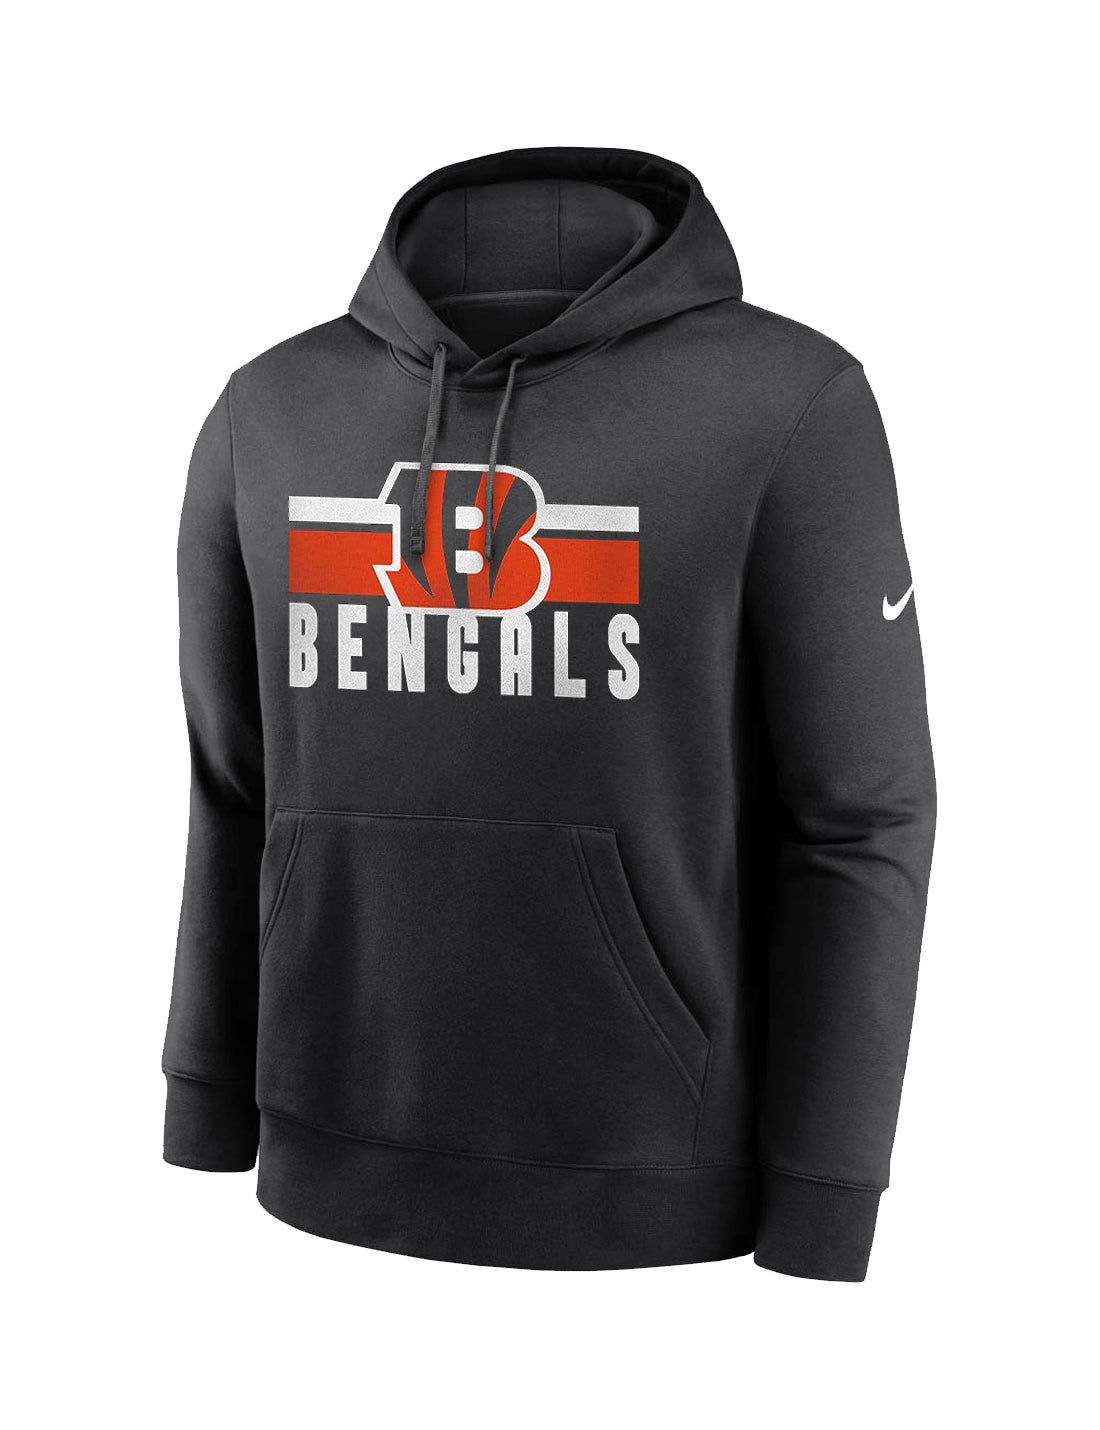 Cincinnati Bengals Nike NFL Team Stripes Hoodie Jumper - Black